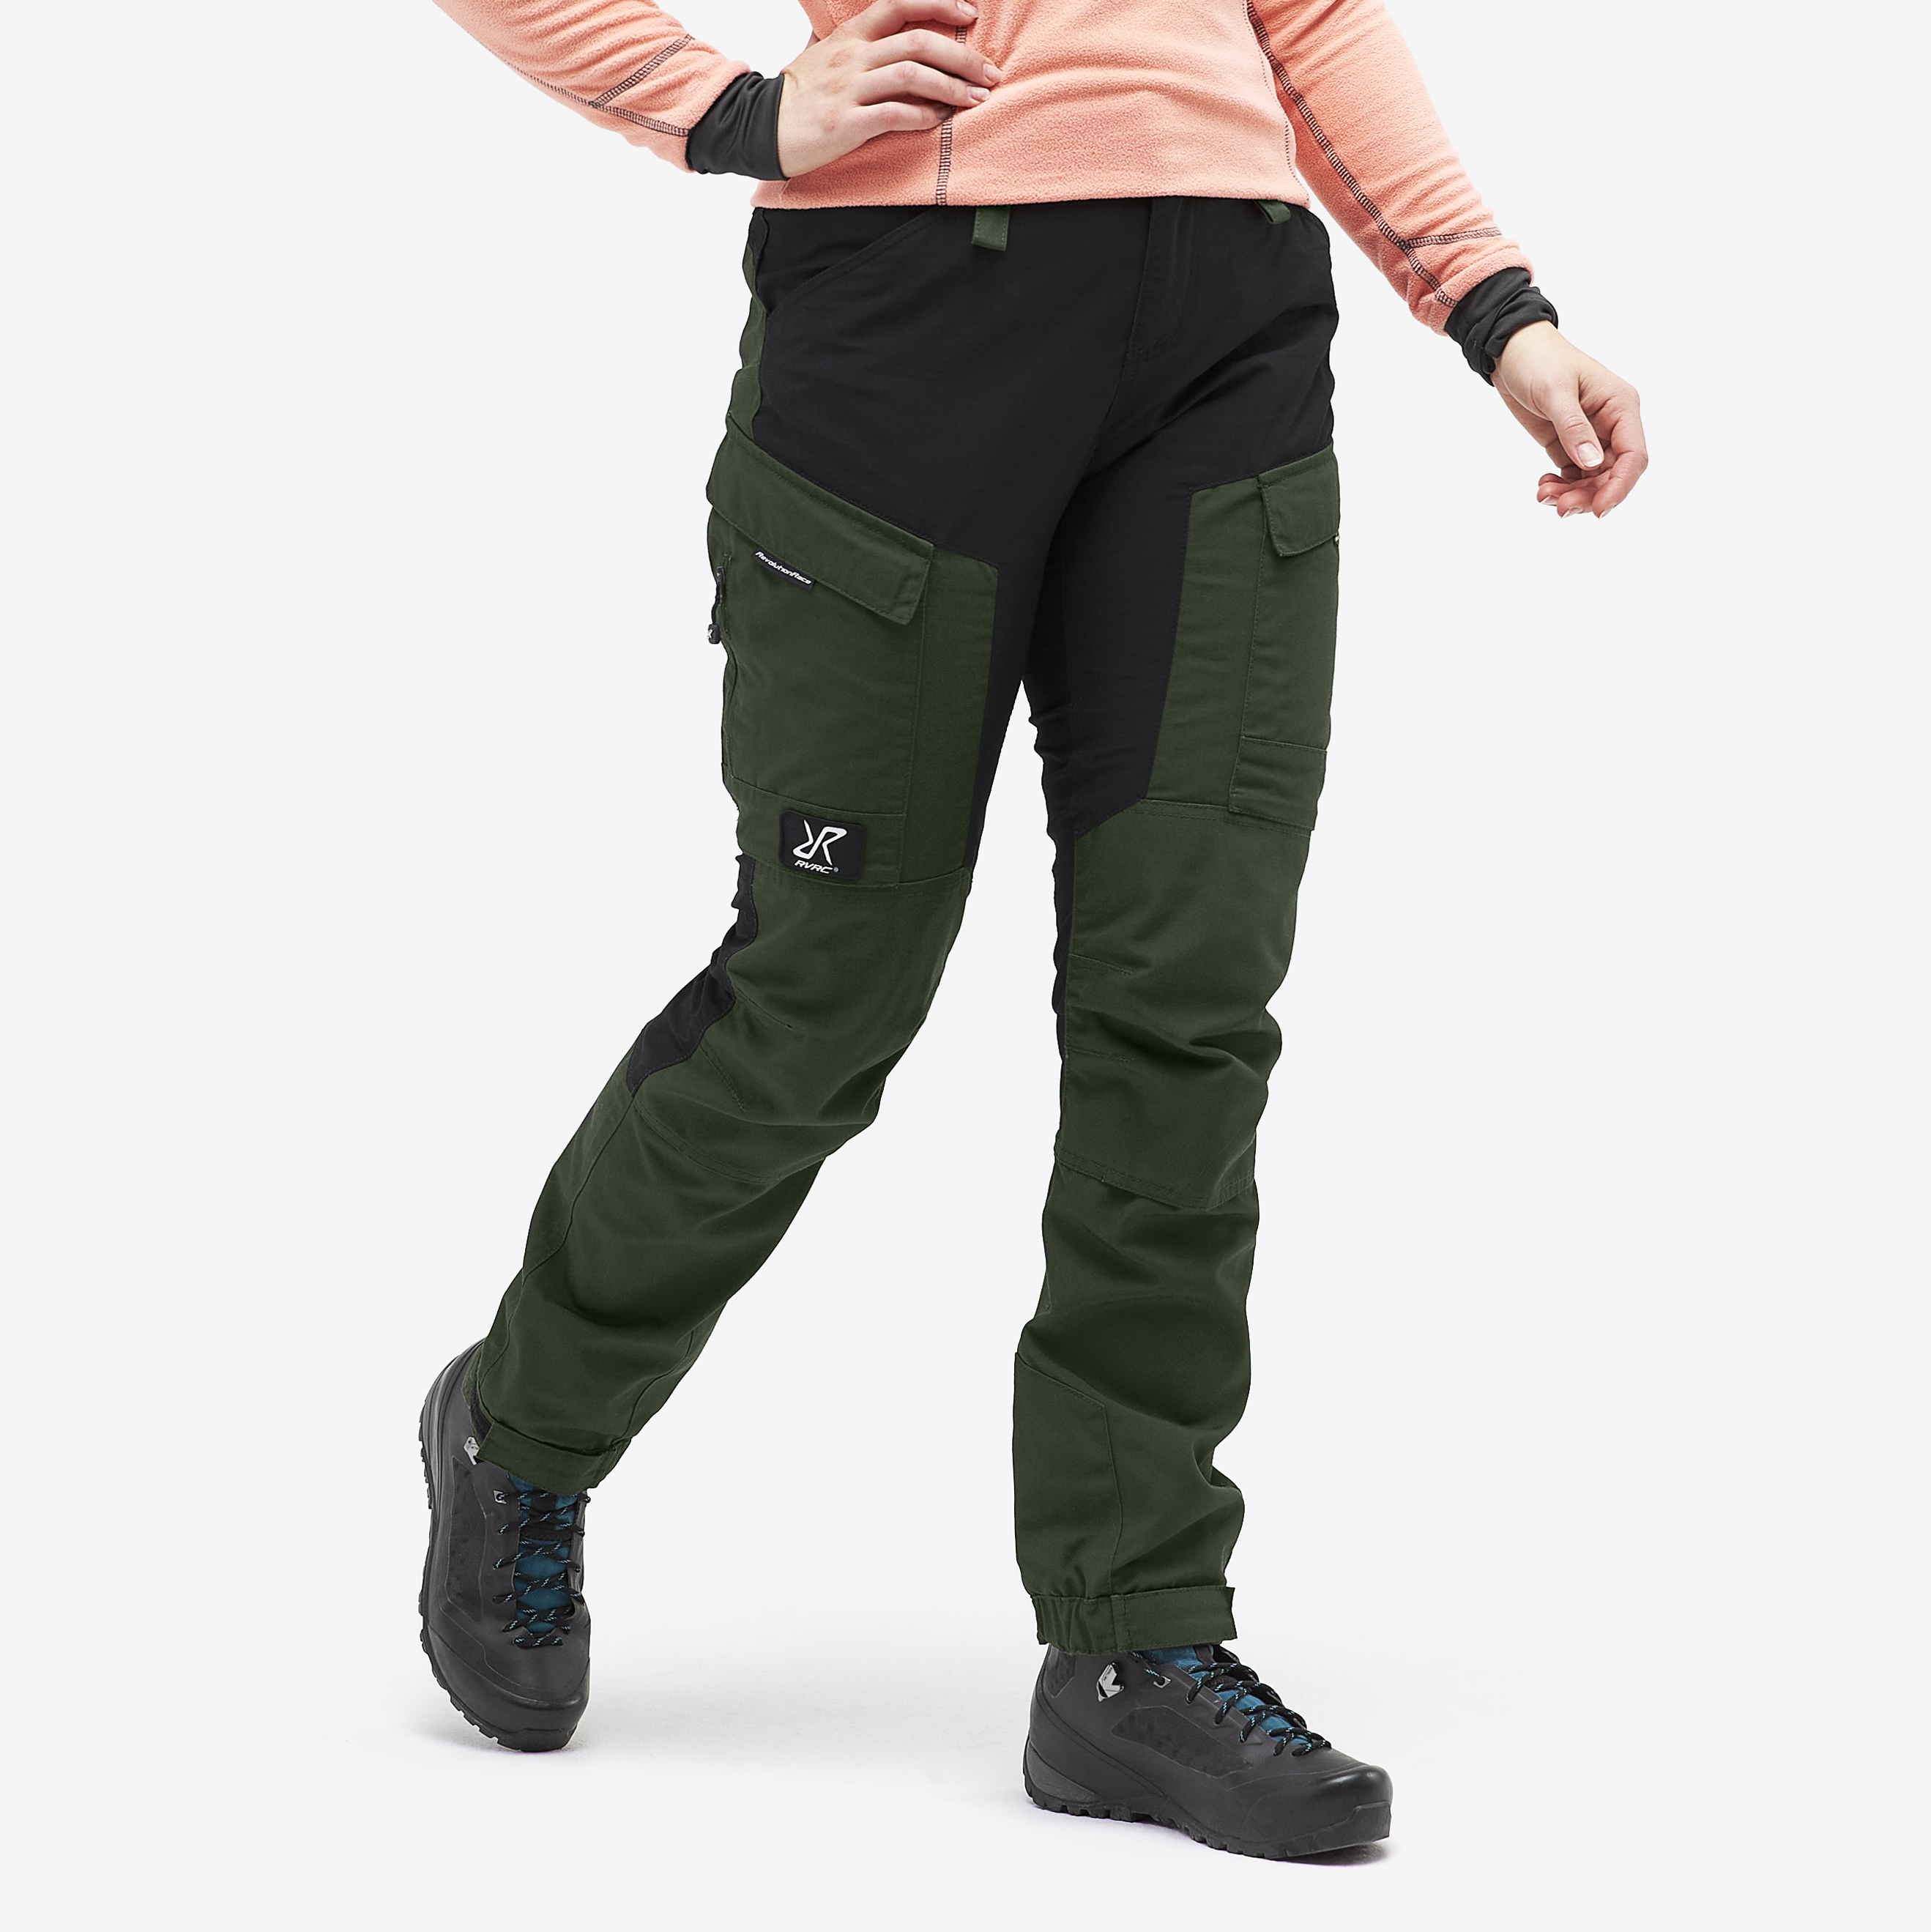 RVRC GP Short walking trousers for women in green